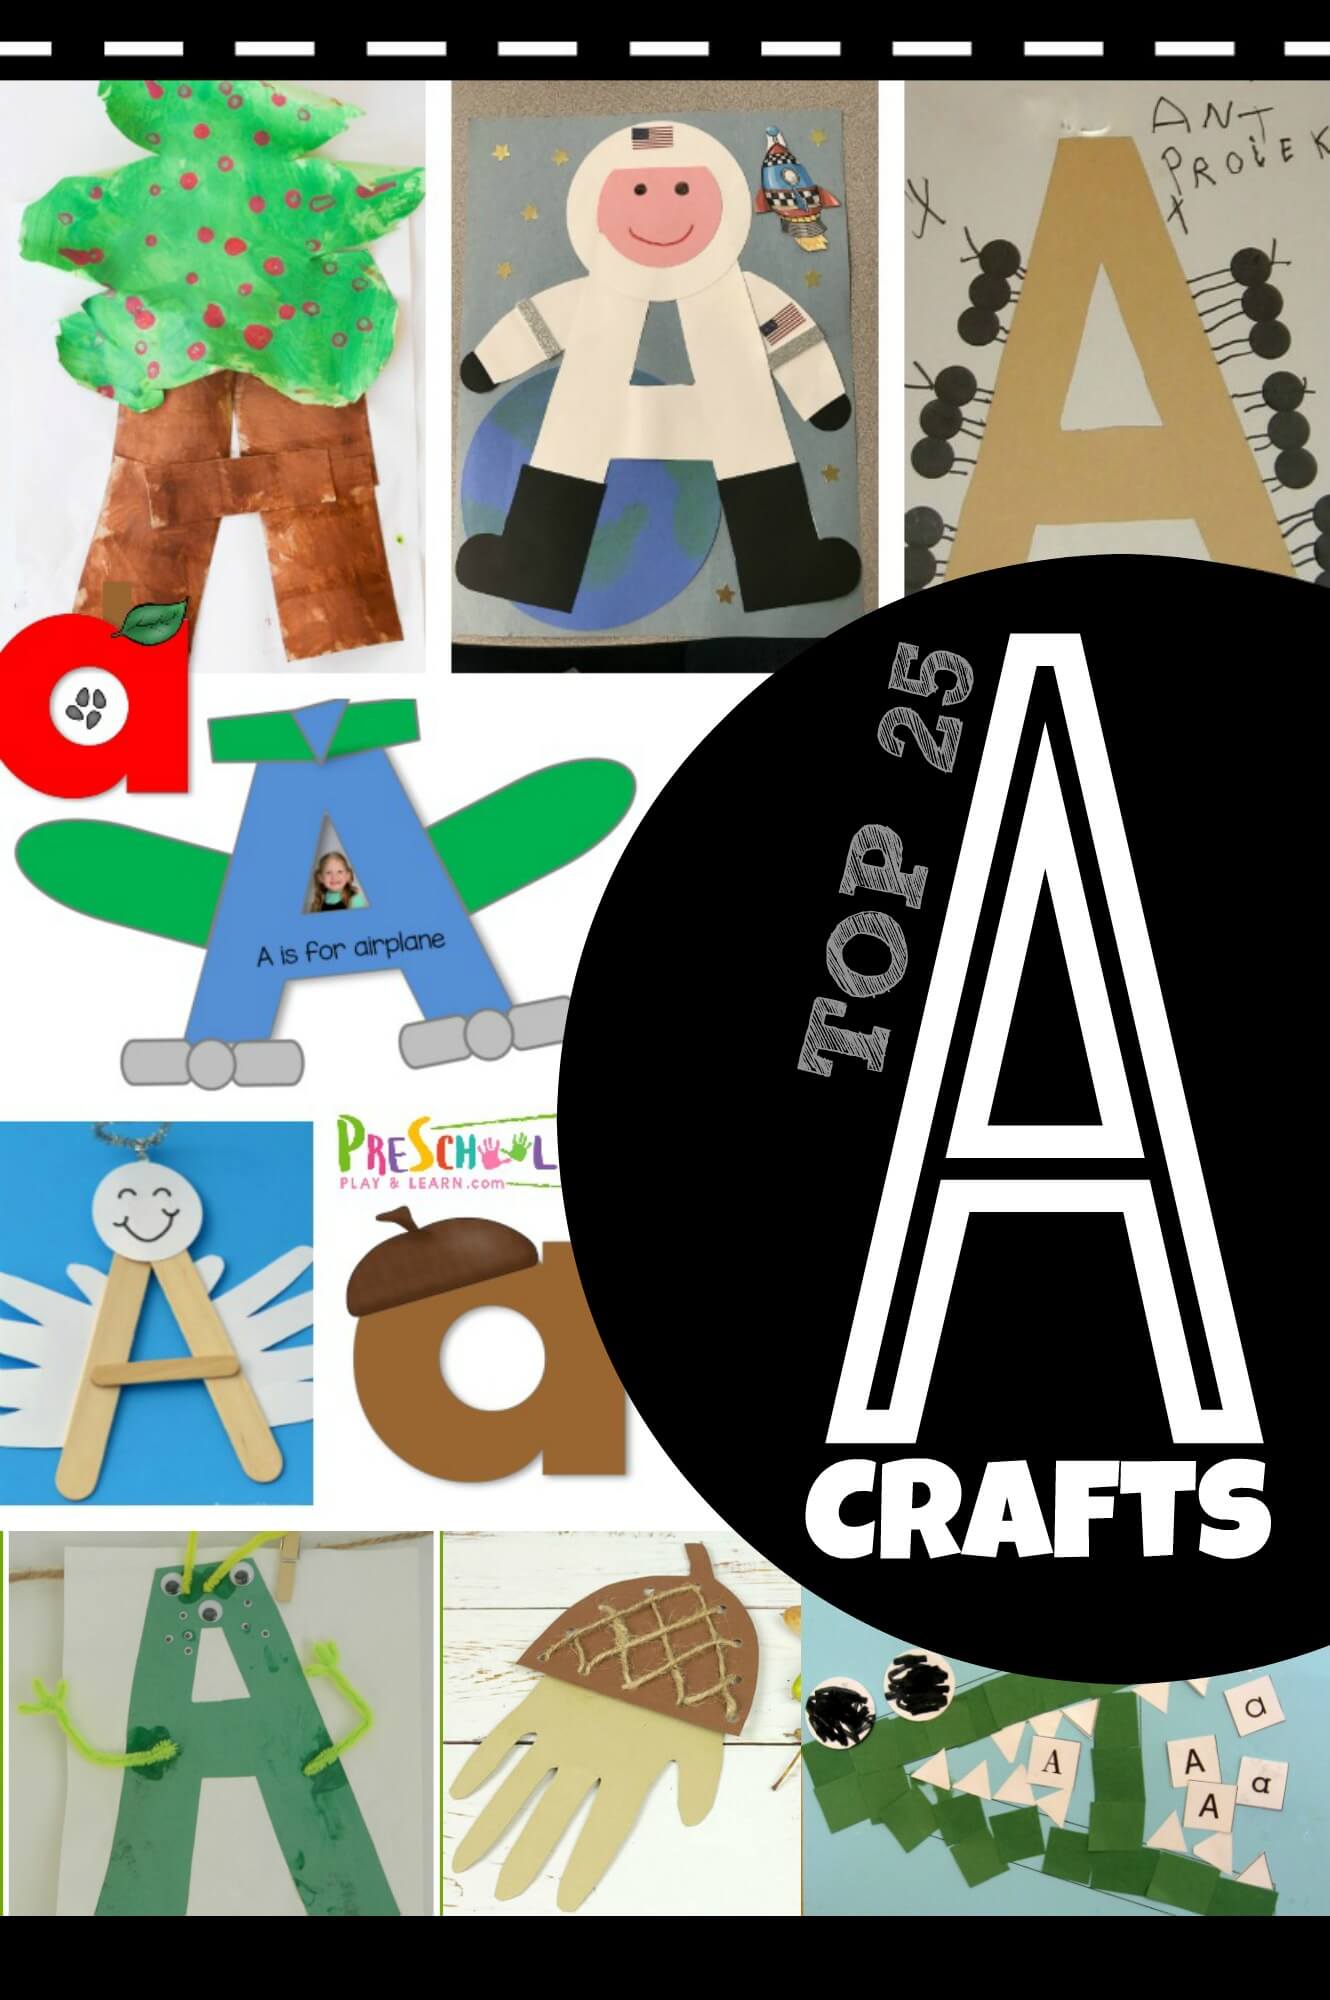 https://www.preschoolplayandlearn.com/wp-content/uploads/2019/03/letter-a-crafts-1.jpg